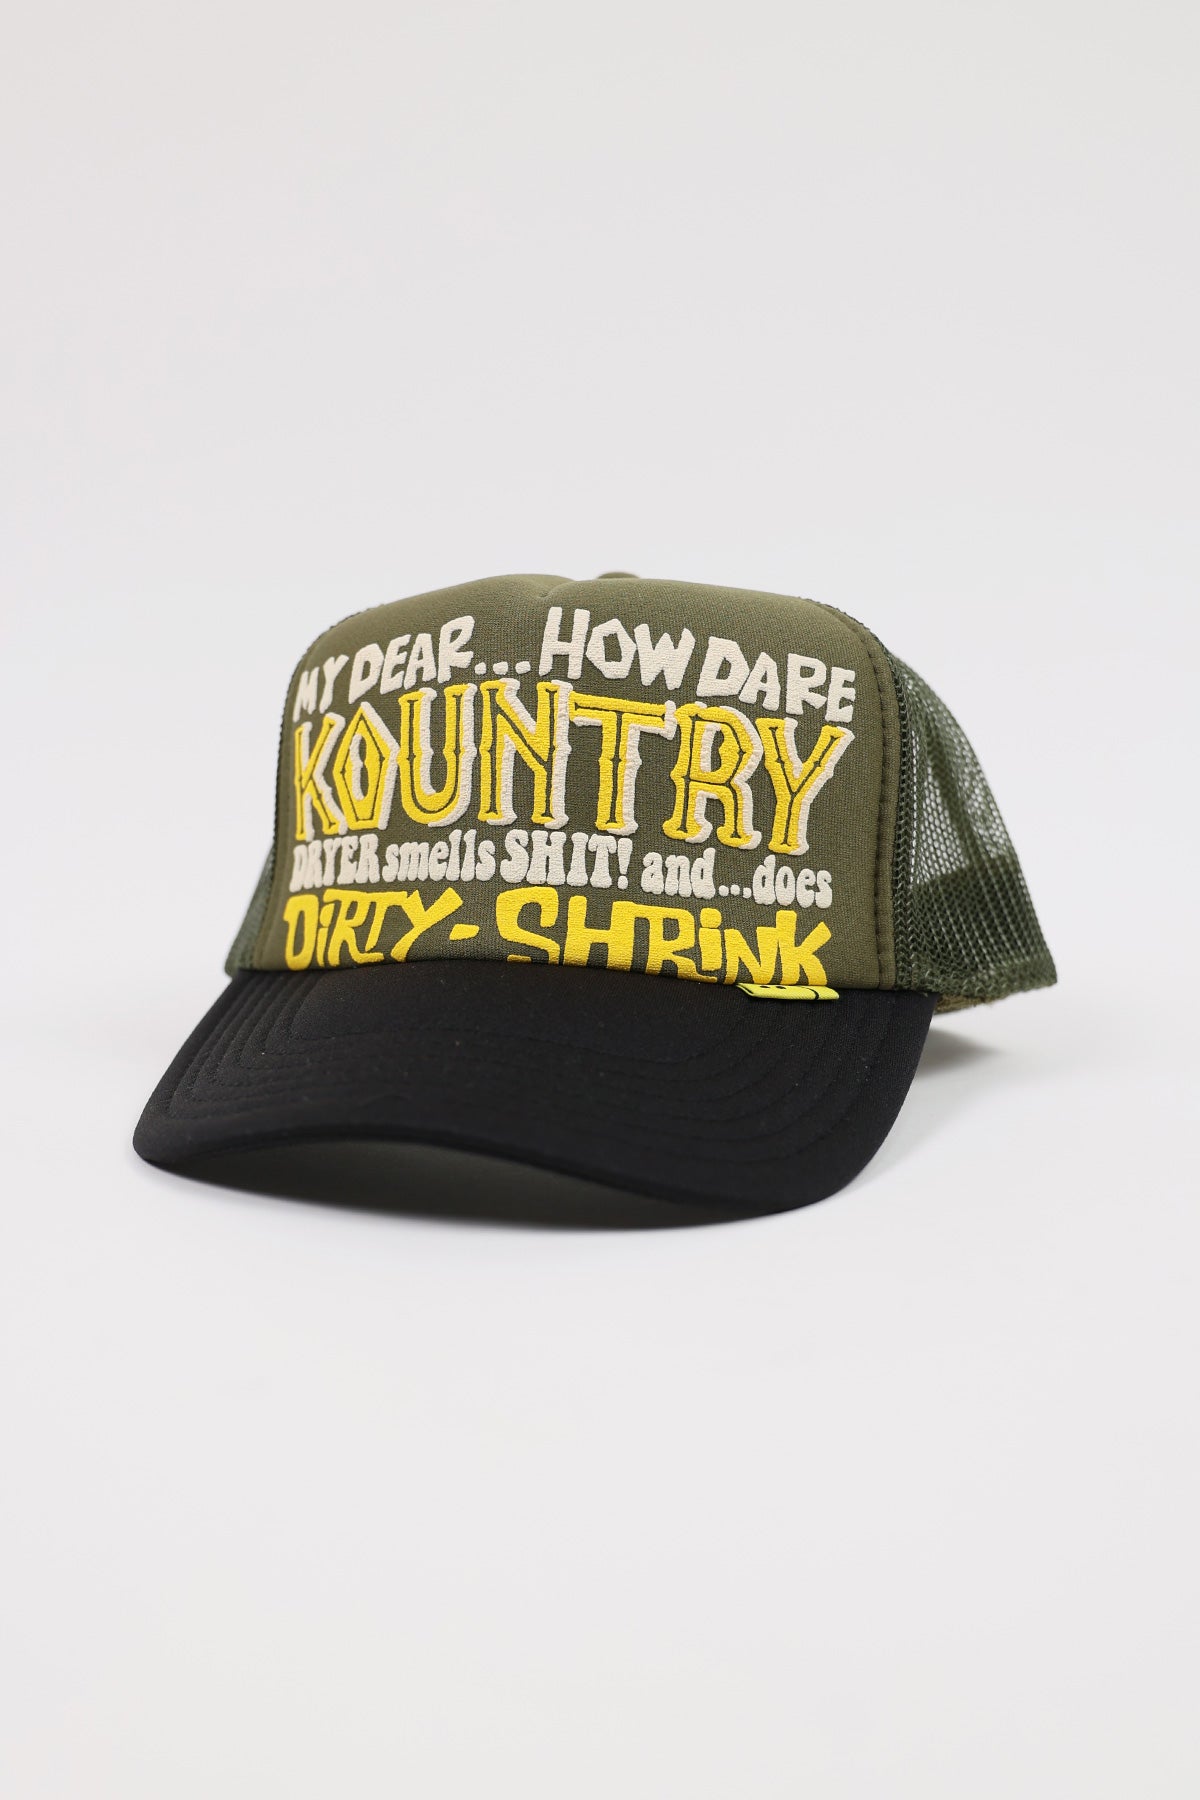 KOUNTRY DIRTY SHRINK Trucker CAP - Dark Green x Black